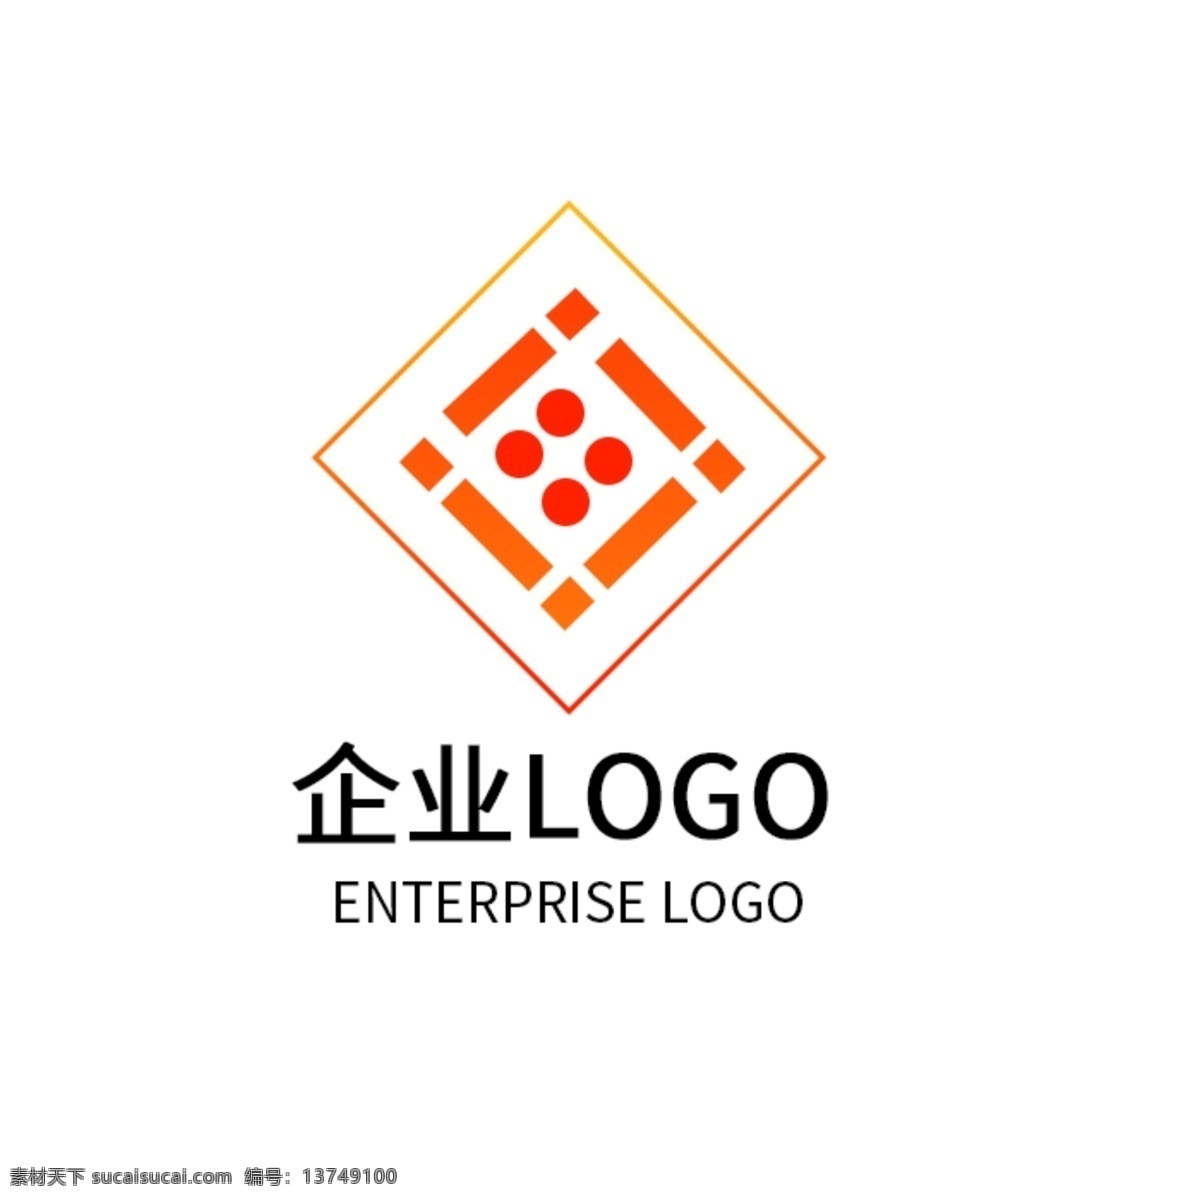 橙色 红色 渐变 矩形 logo 设计公司 企业 标志 橙色渐变 红色渐变 矩形logo 公司 企业标志 top排名